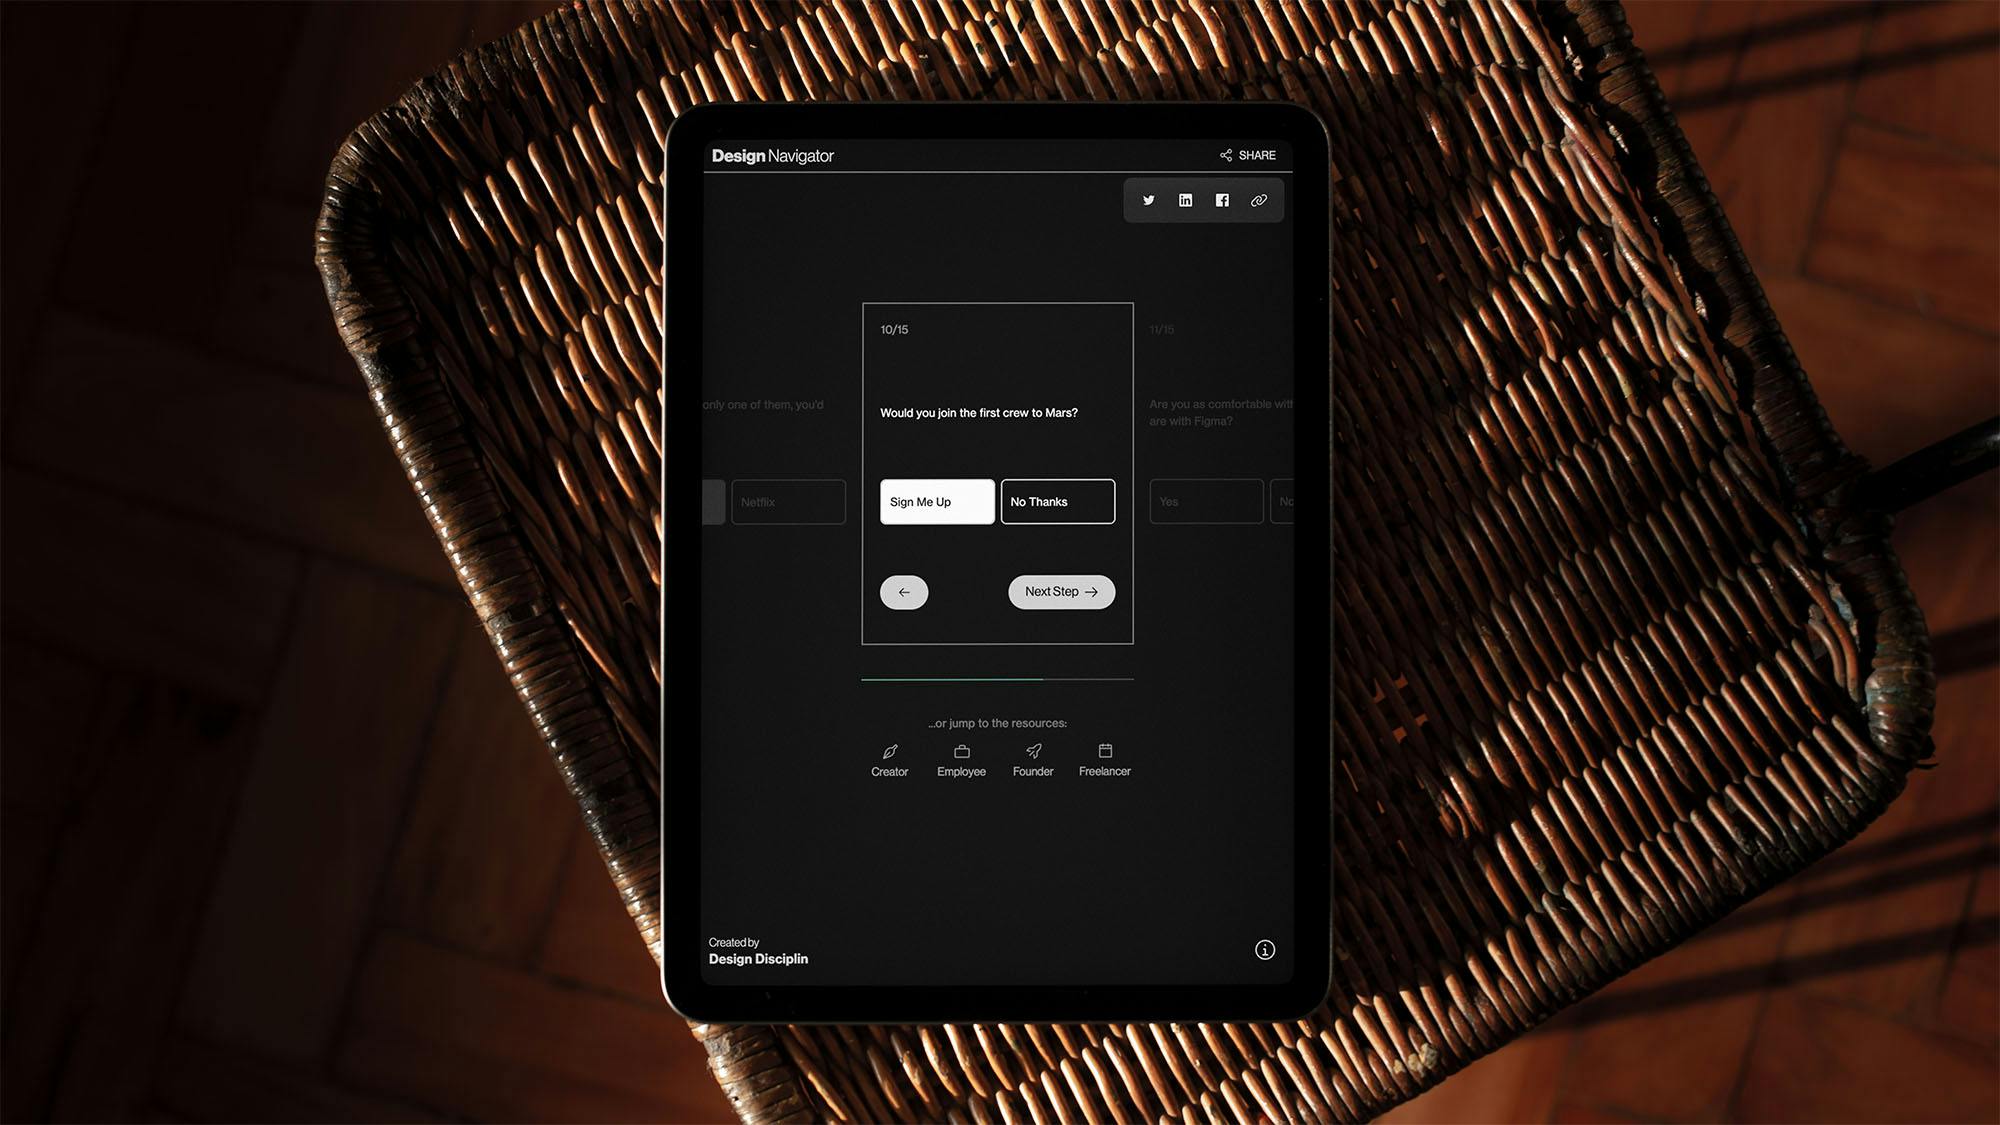 Responsive web app for Design Navigator, displayed on tablet